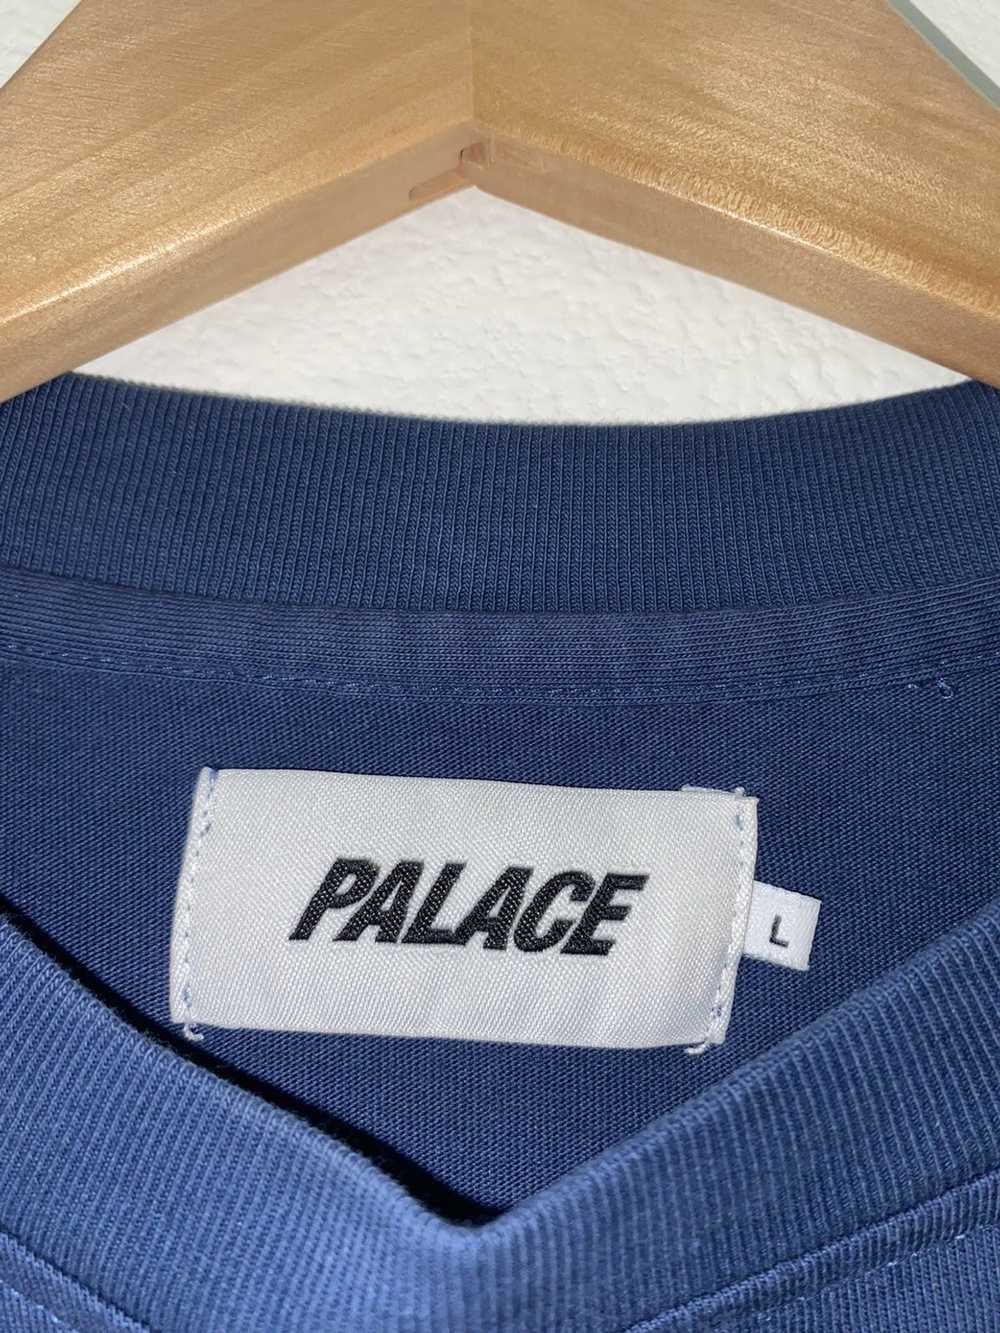 Palace Palace Striped Long Sleeve - image 5